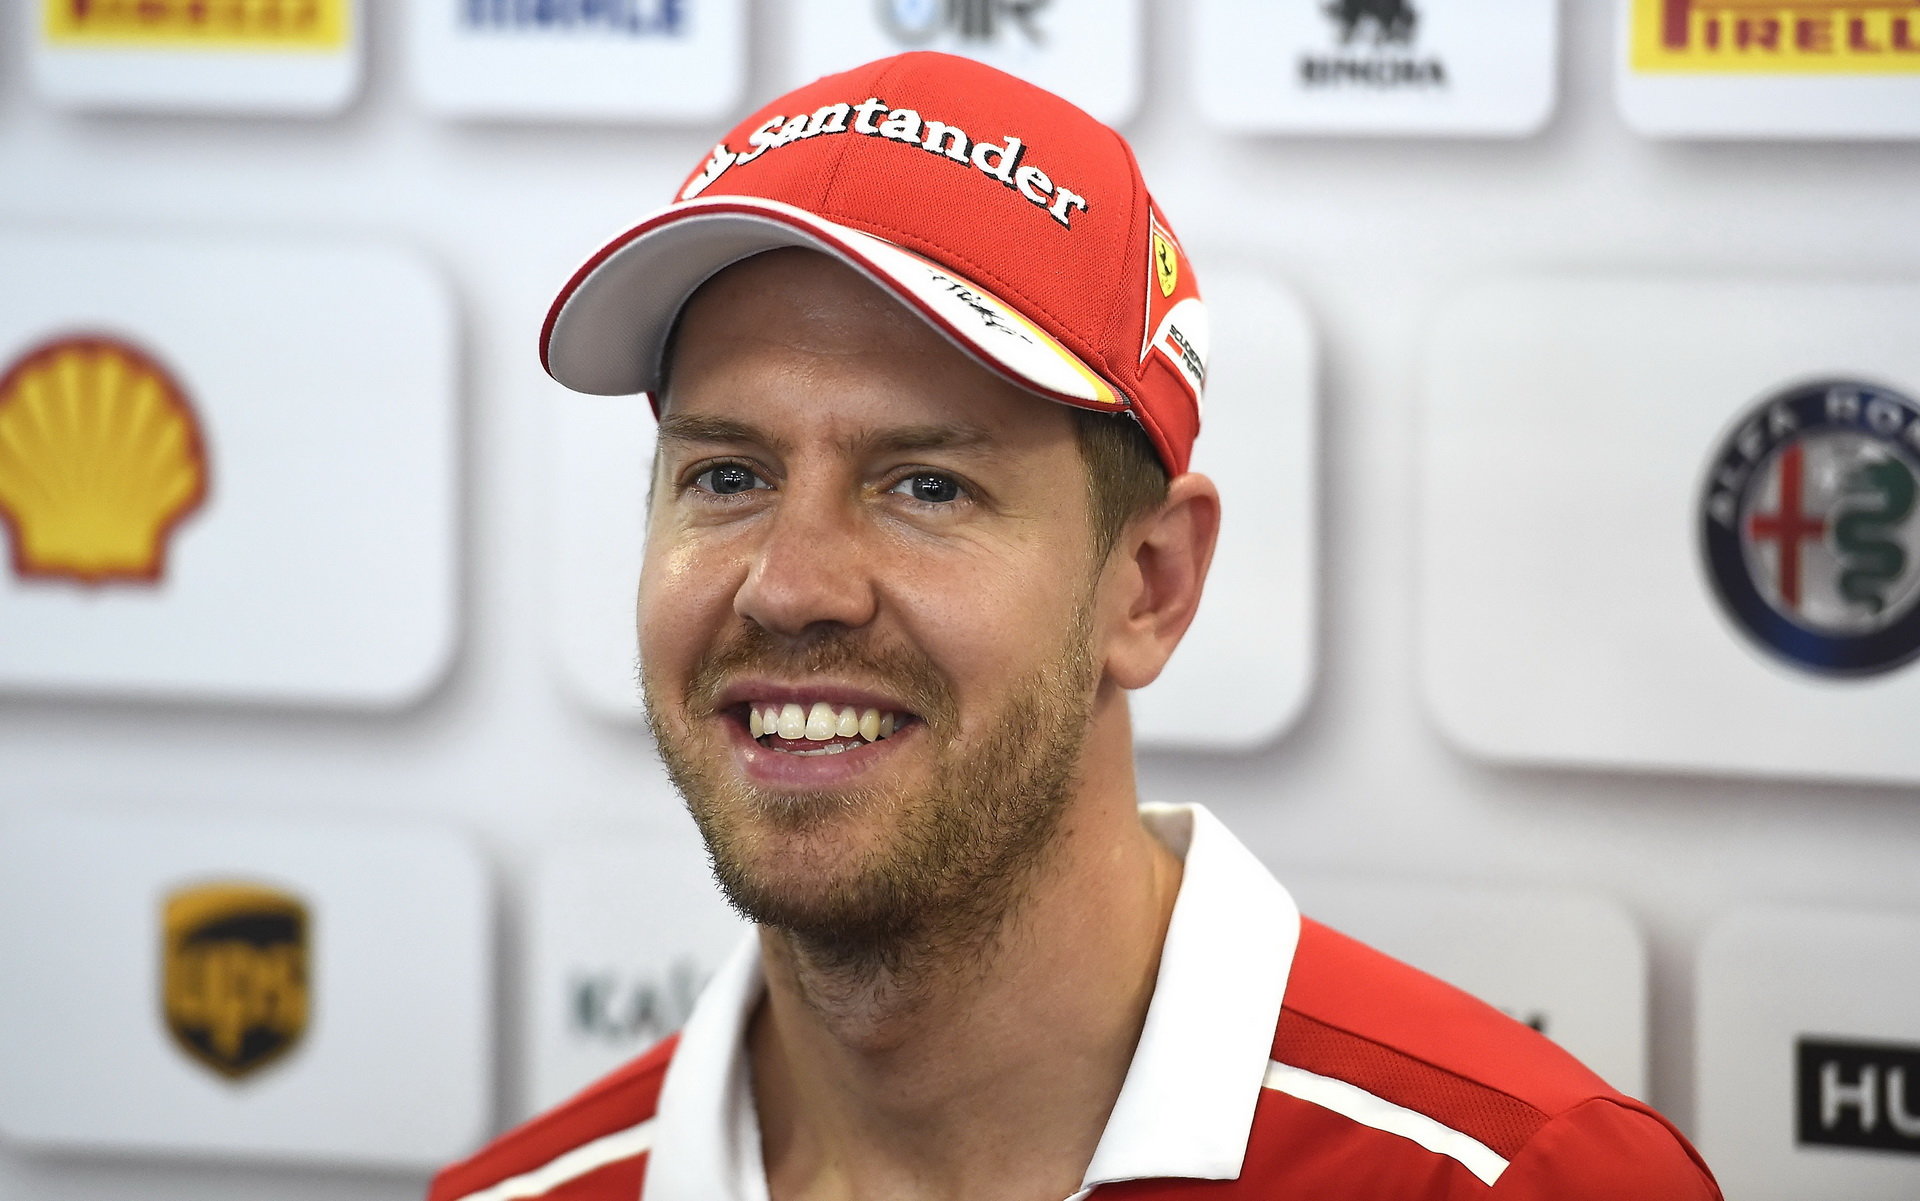 Možná nejsem tak chytrý, ale rozhodně nejsem konfliktní," tvrdí Vettel